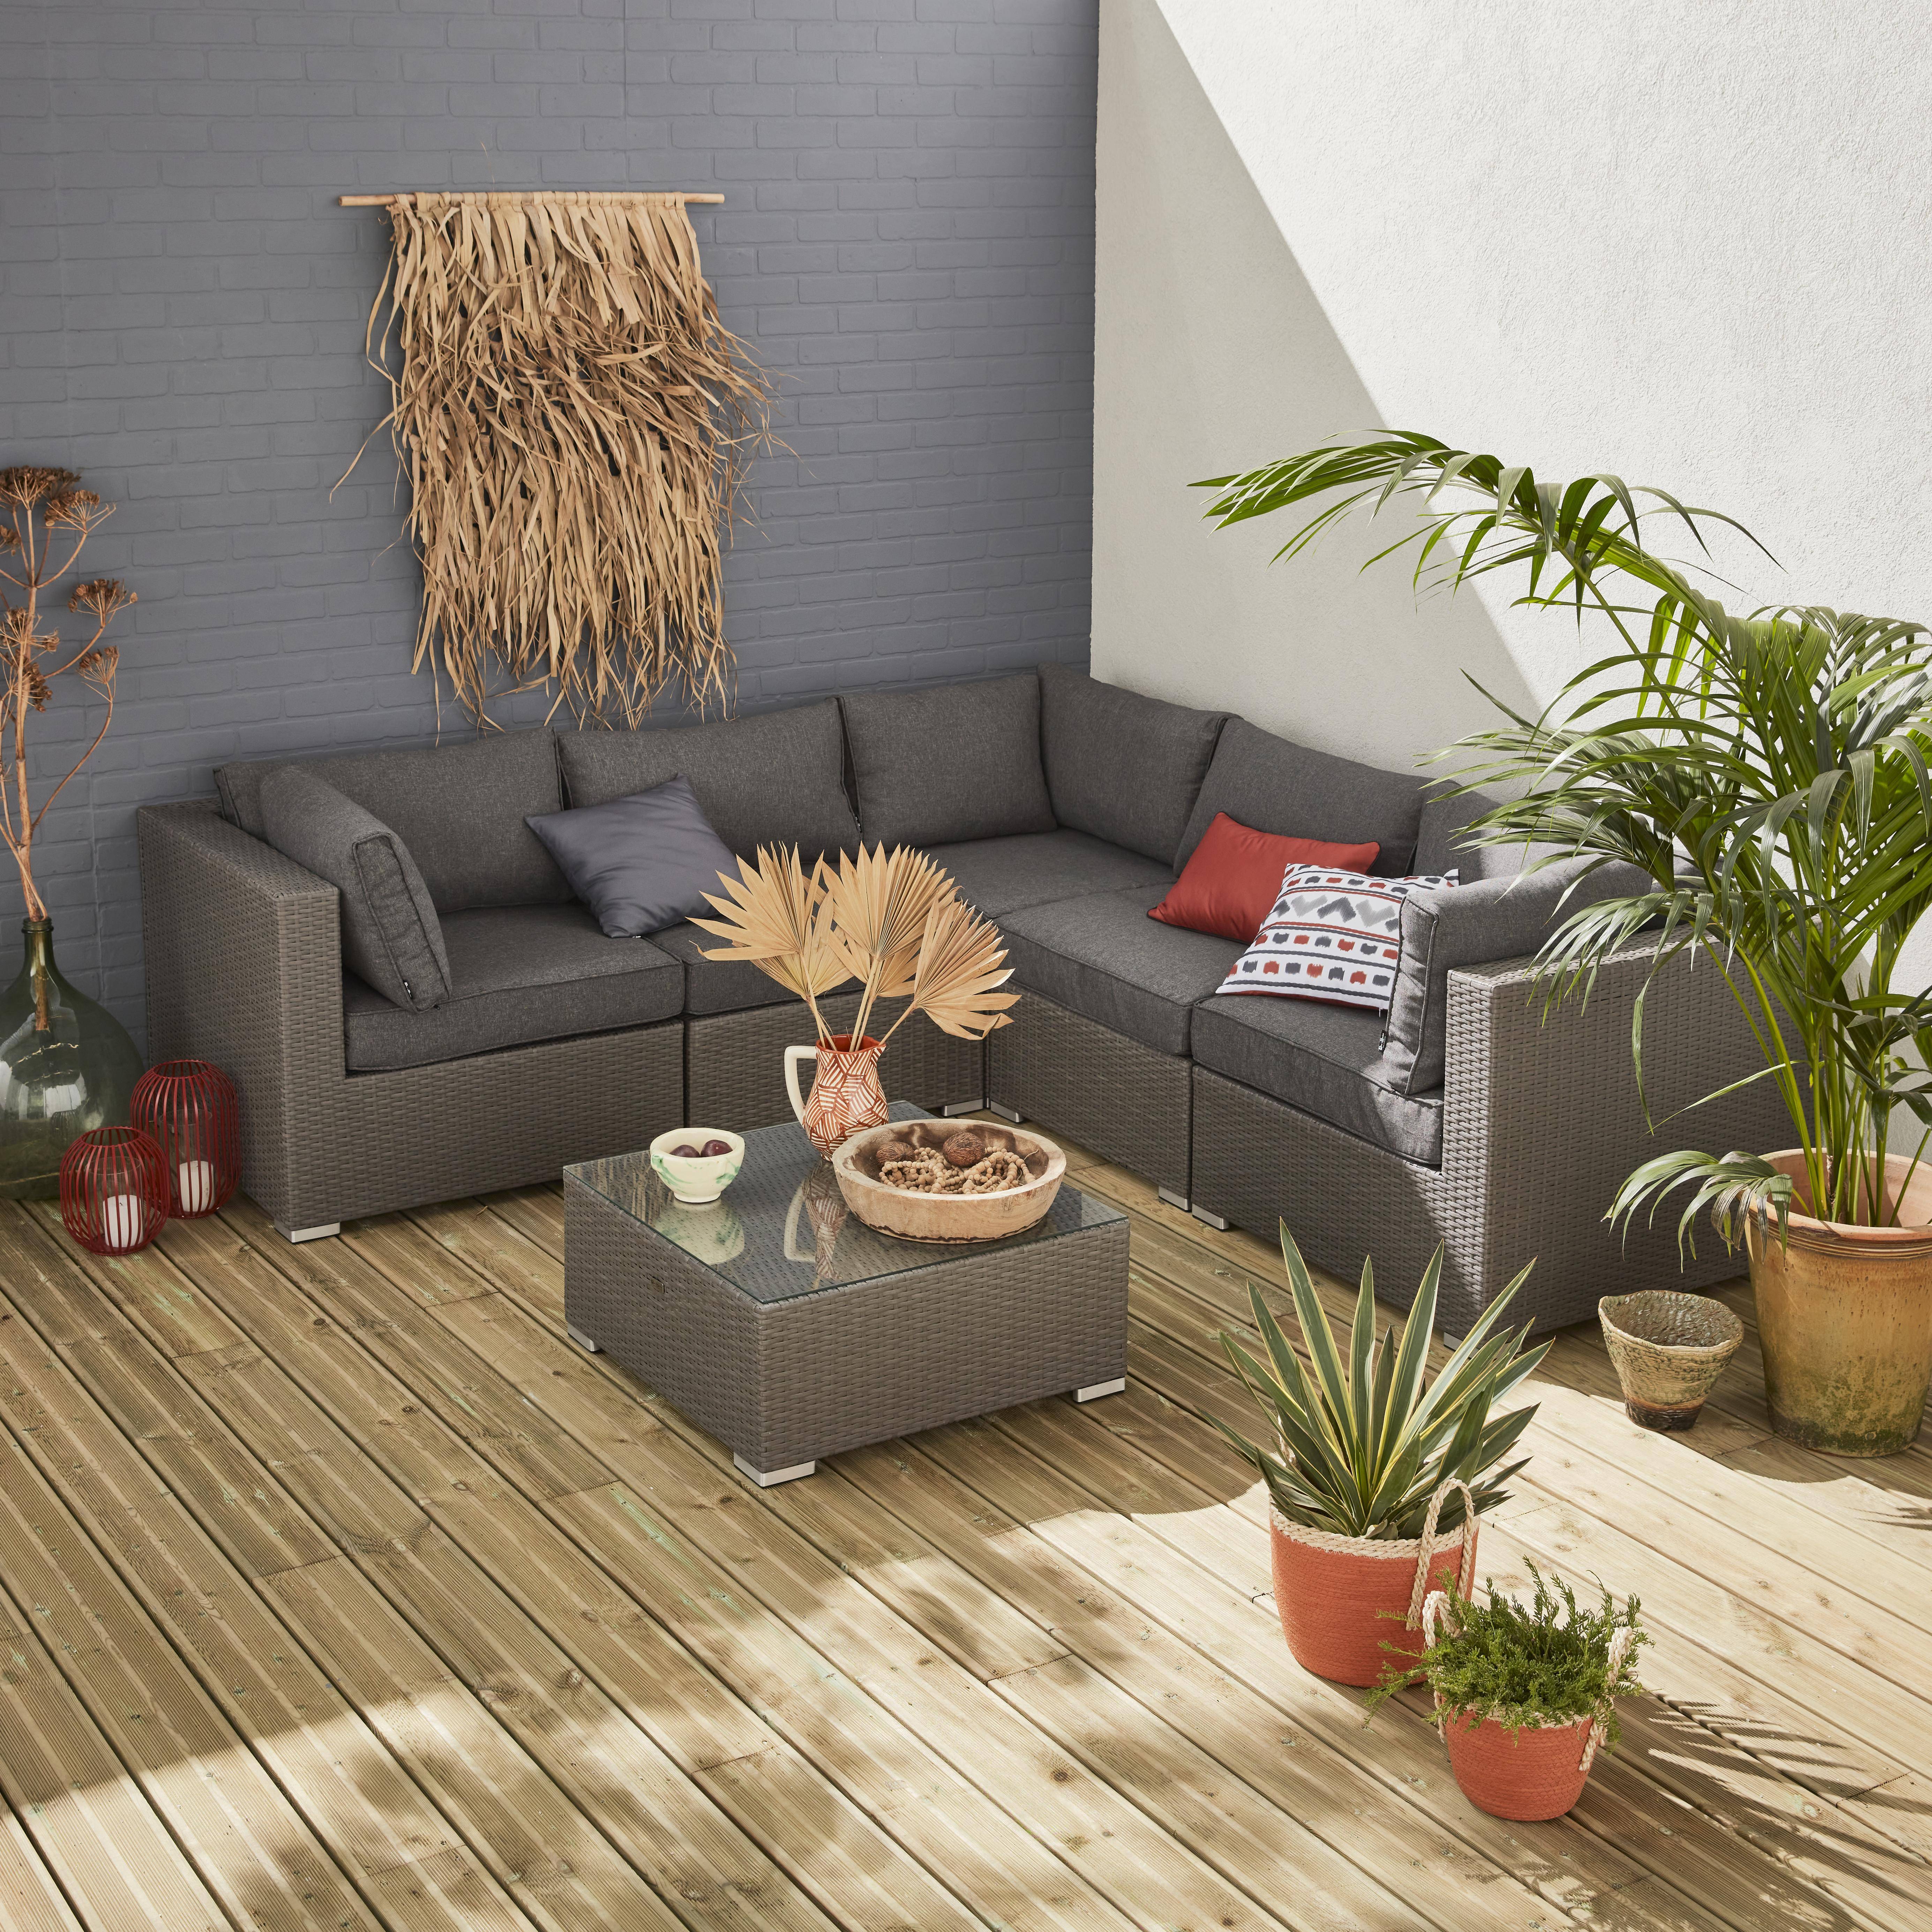 Gartengarnitur aus Kunststoffrattan - Napoli - grau, graumelierte Kissen - 5 Sitze - 2 Sessel ohne Armlehnen, 3 Ecksessel, ein Couchtisch Photo1